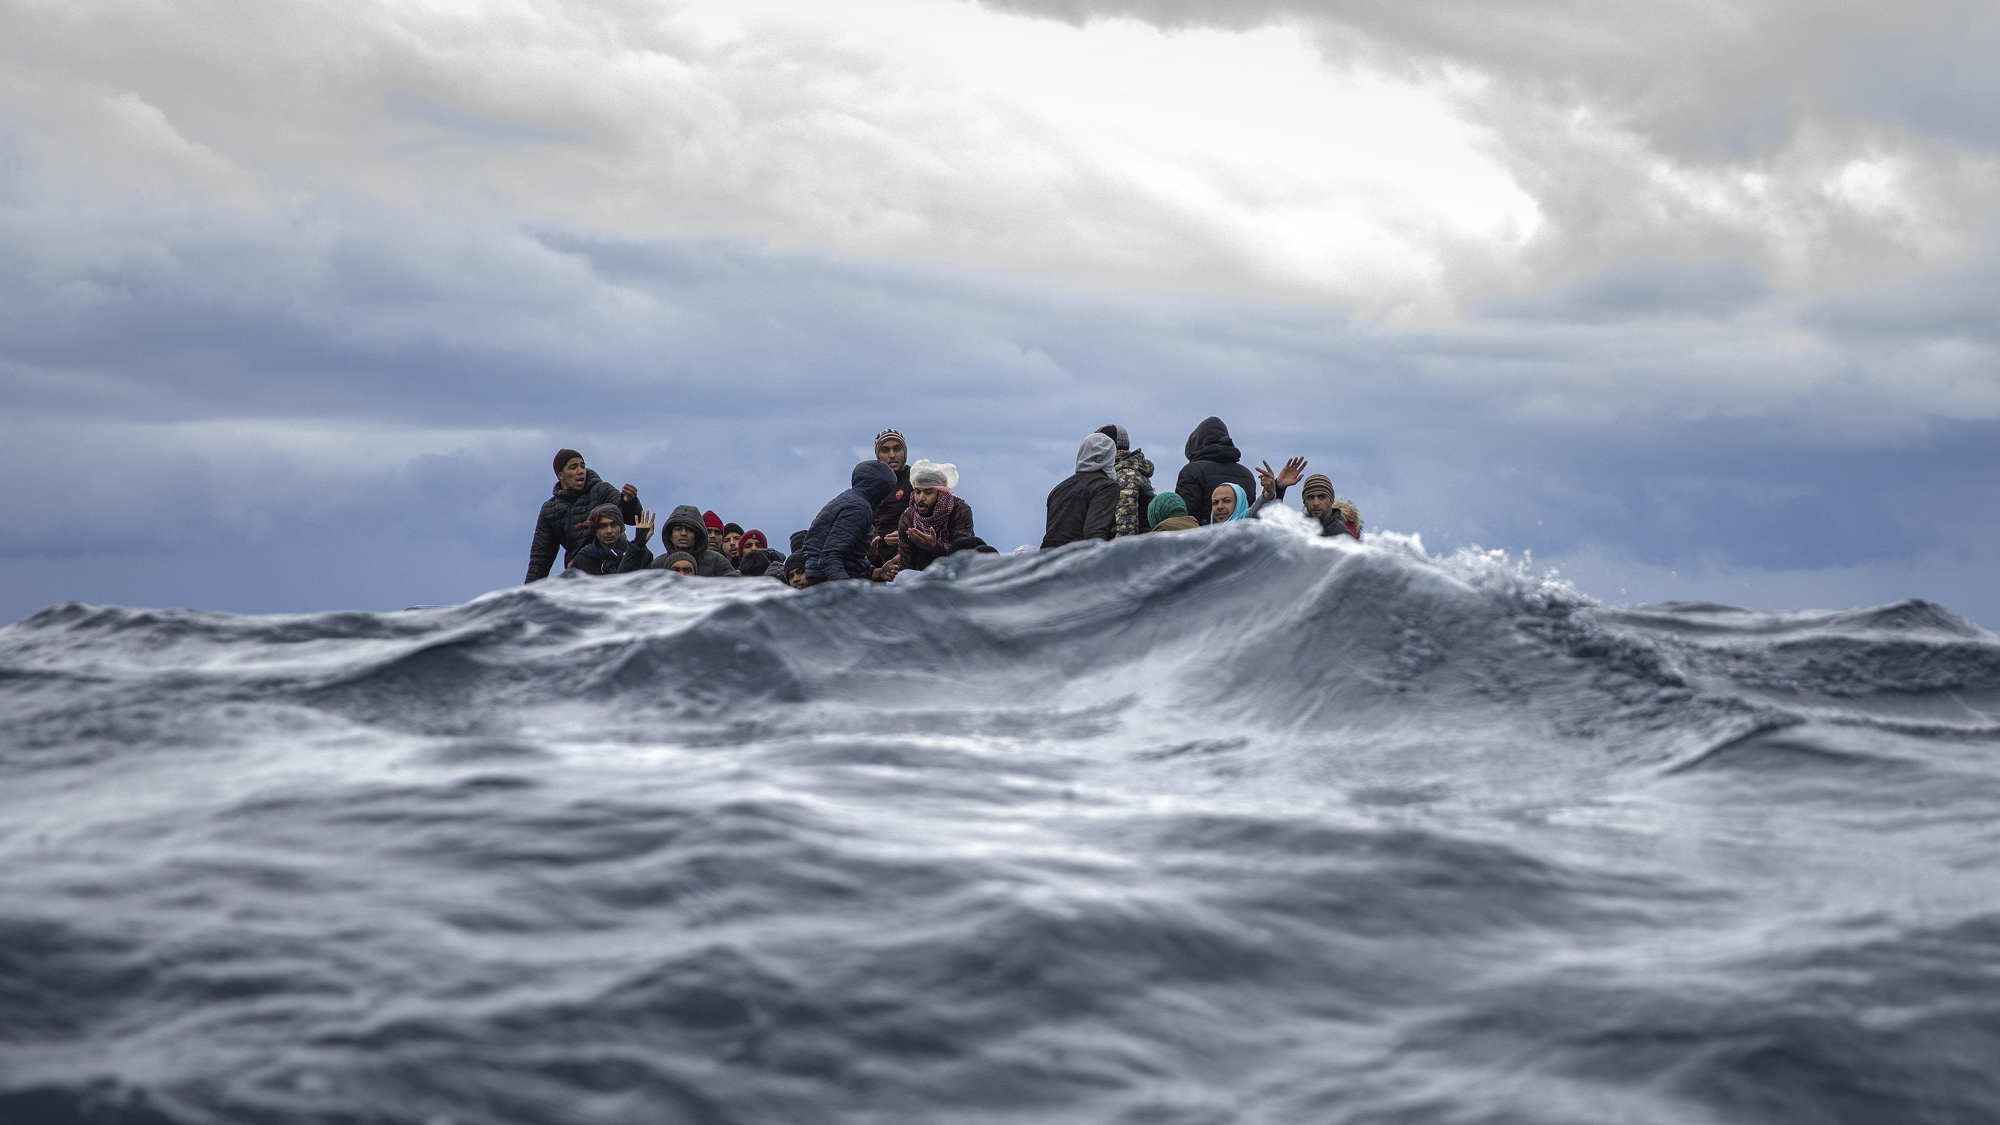 Naufragio a Lampedusa, il Pd: "Serve una nuova Mare Nostrum europea"